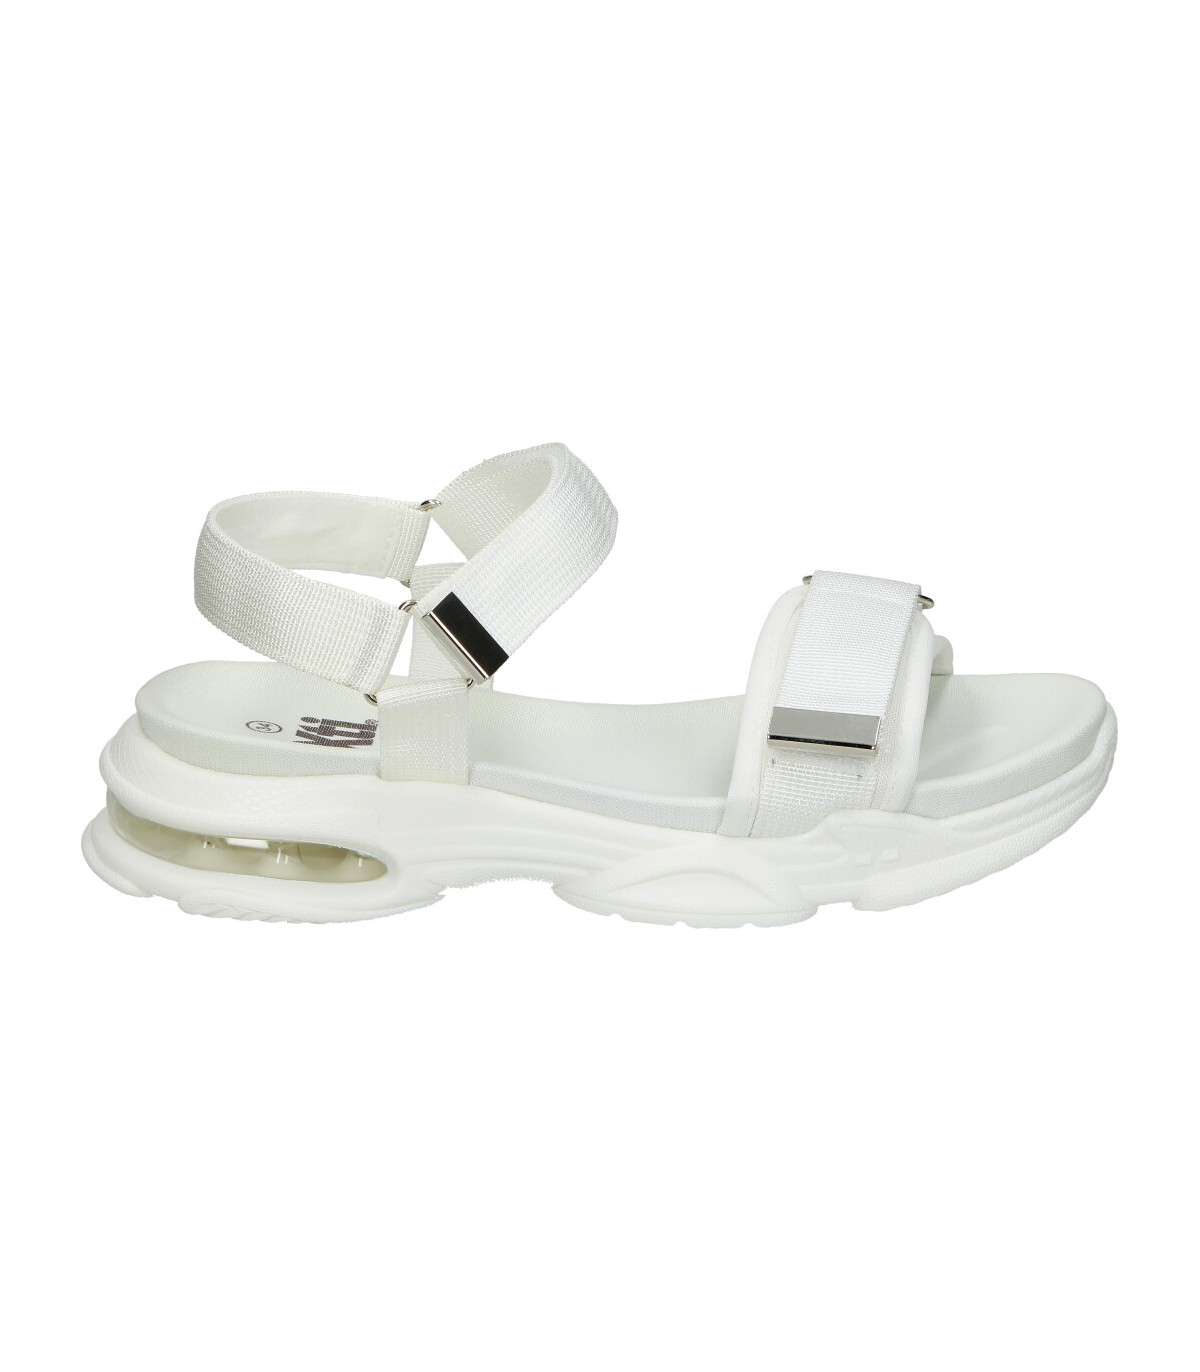 Sandalias para niña Xti 150356 color blanco en